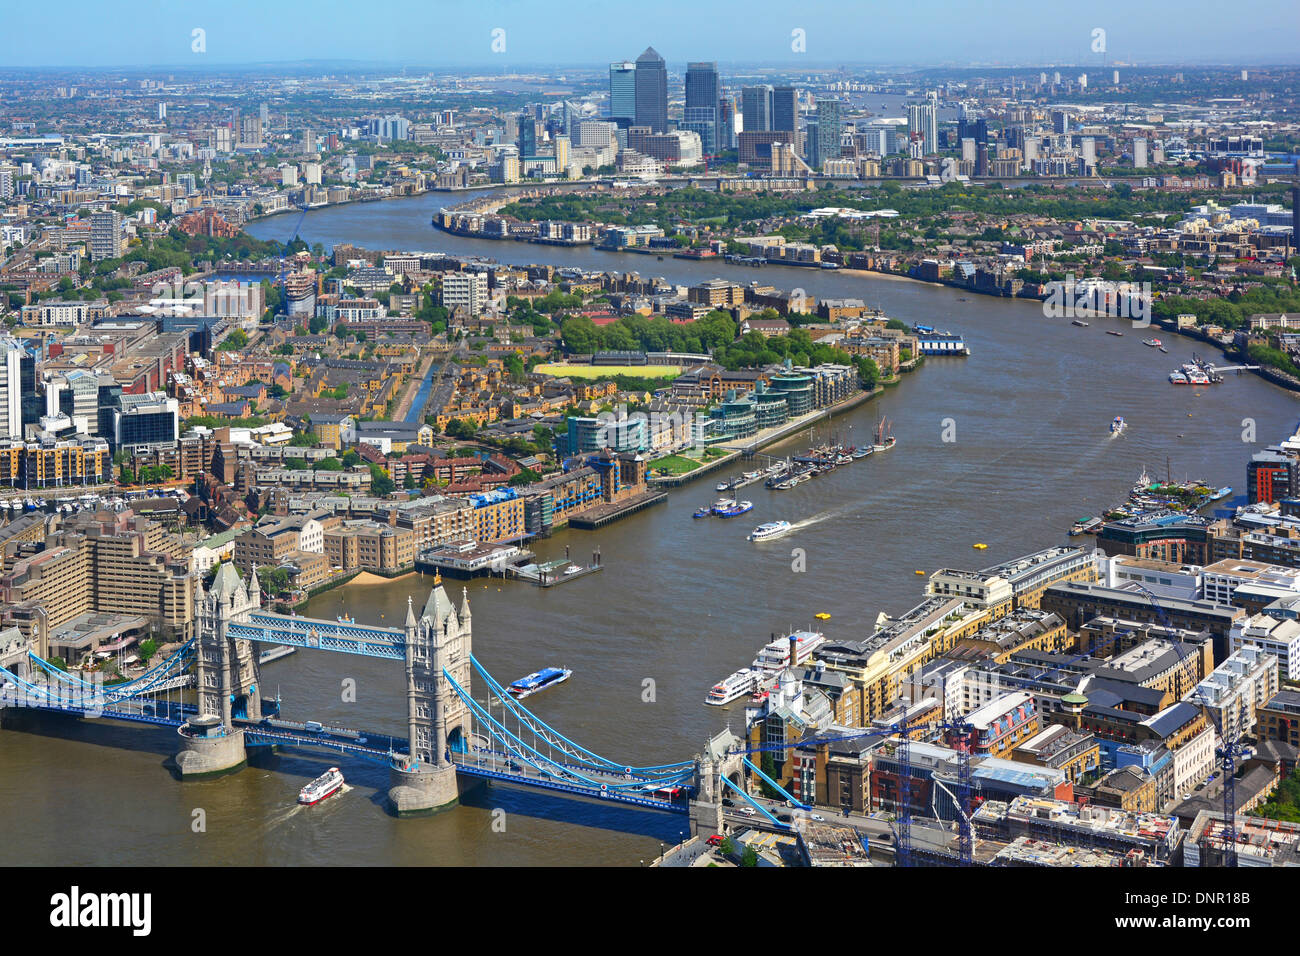 La vista aerea del paesaggio urbano londinese dall'alta marea del Tamigi di Shard inizia dall'iconico Tower Bridge verso lo skyline di Canary Wharf, i punti di riferimento dell'Inghilterra Regno Unito Foto Stock